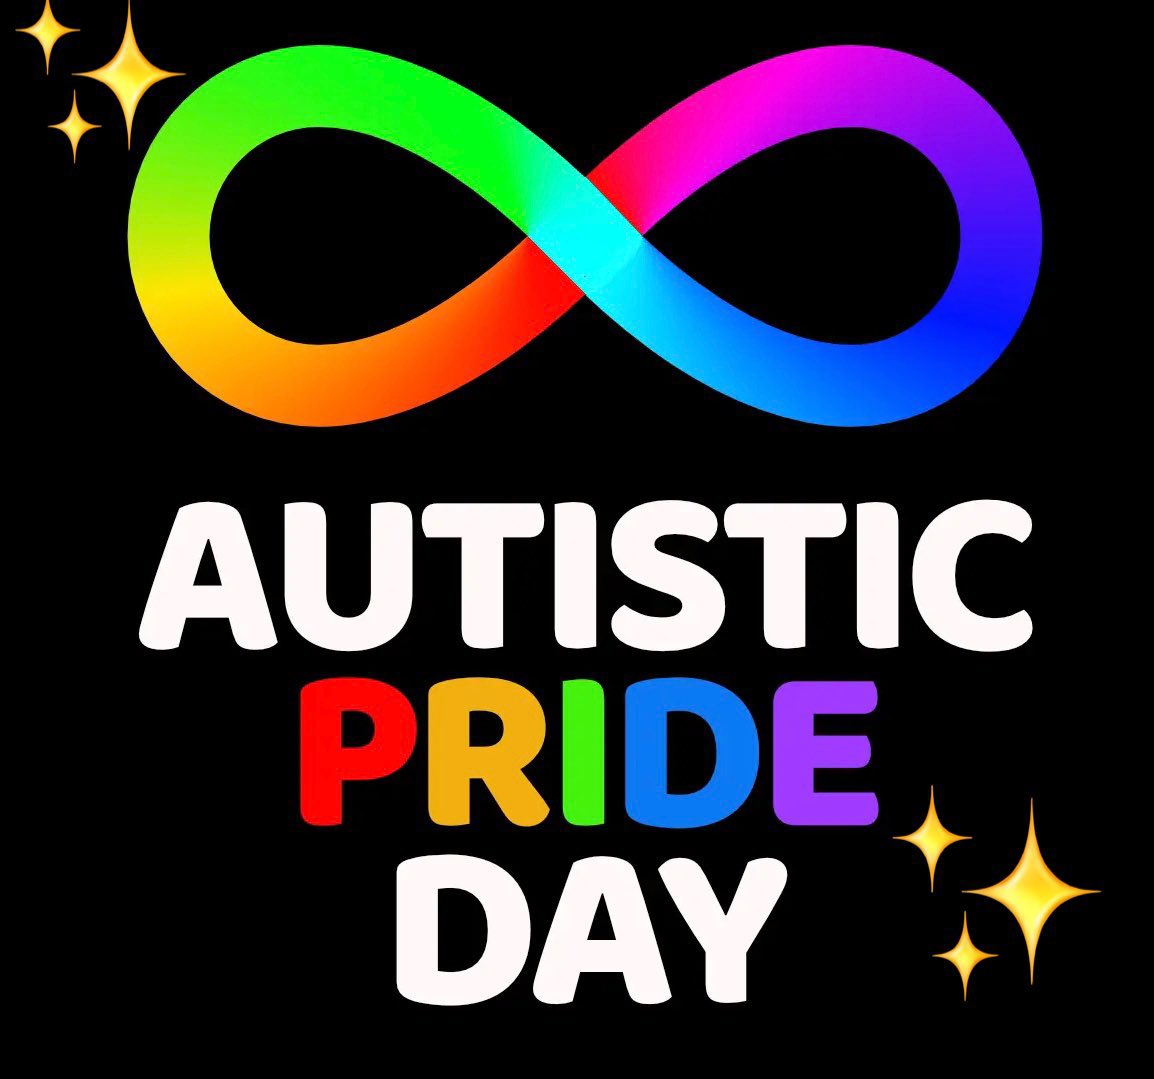 #AutisticPrideDay 
#自閉症プライドデー
私も昔自閉スペクトラム症と診断され、カミングアウトするのに勇気が入りましたが、今では自分の特性を受け入れられて大分楽になりました。これは決して言い訳でも同情してもらいたいということでもありません。